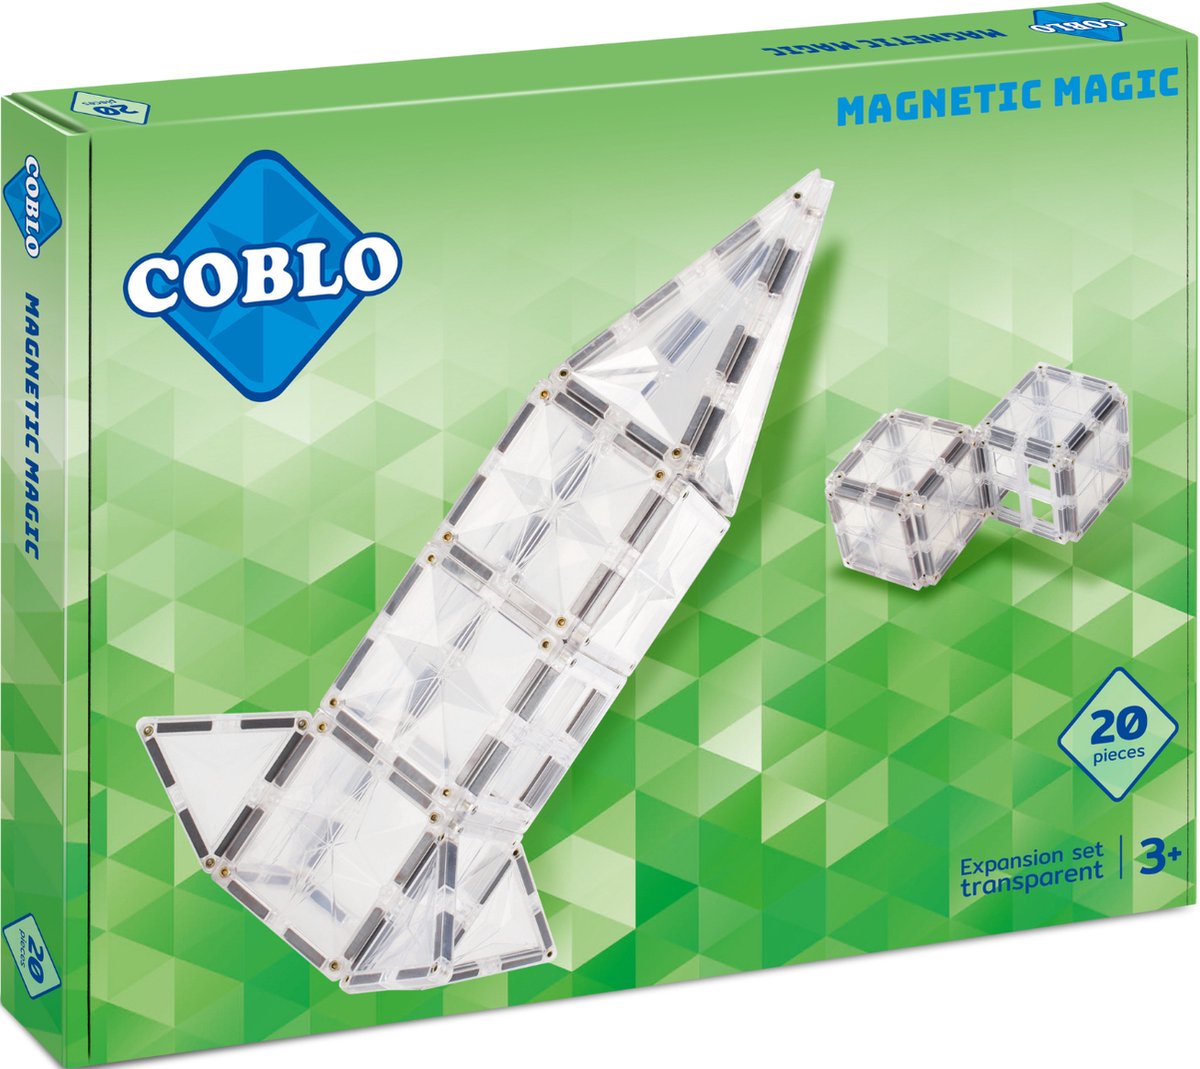 Coblo Transparant 20 stuks - Magnetisch speelgoed - Montessori speelgoed - Magnetische Bouwstenen - Magnetische tegels - STEM speelgoed - Cadeau kind - Speelgoed 3 jaar t/m 12 jaar